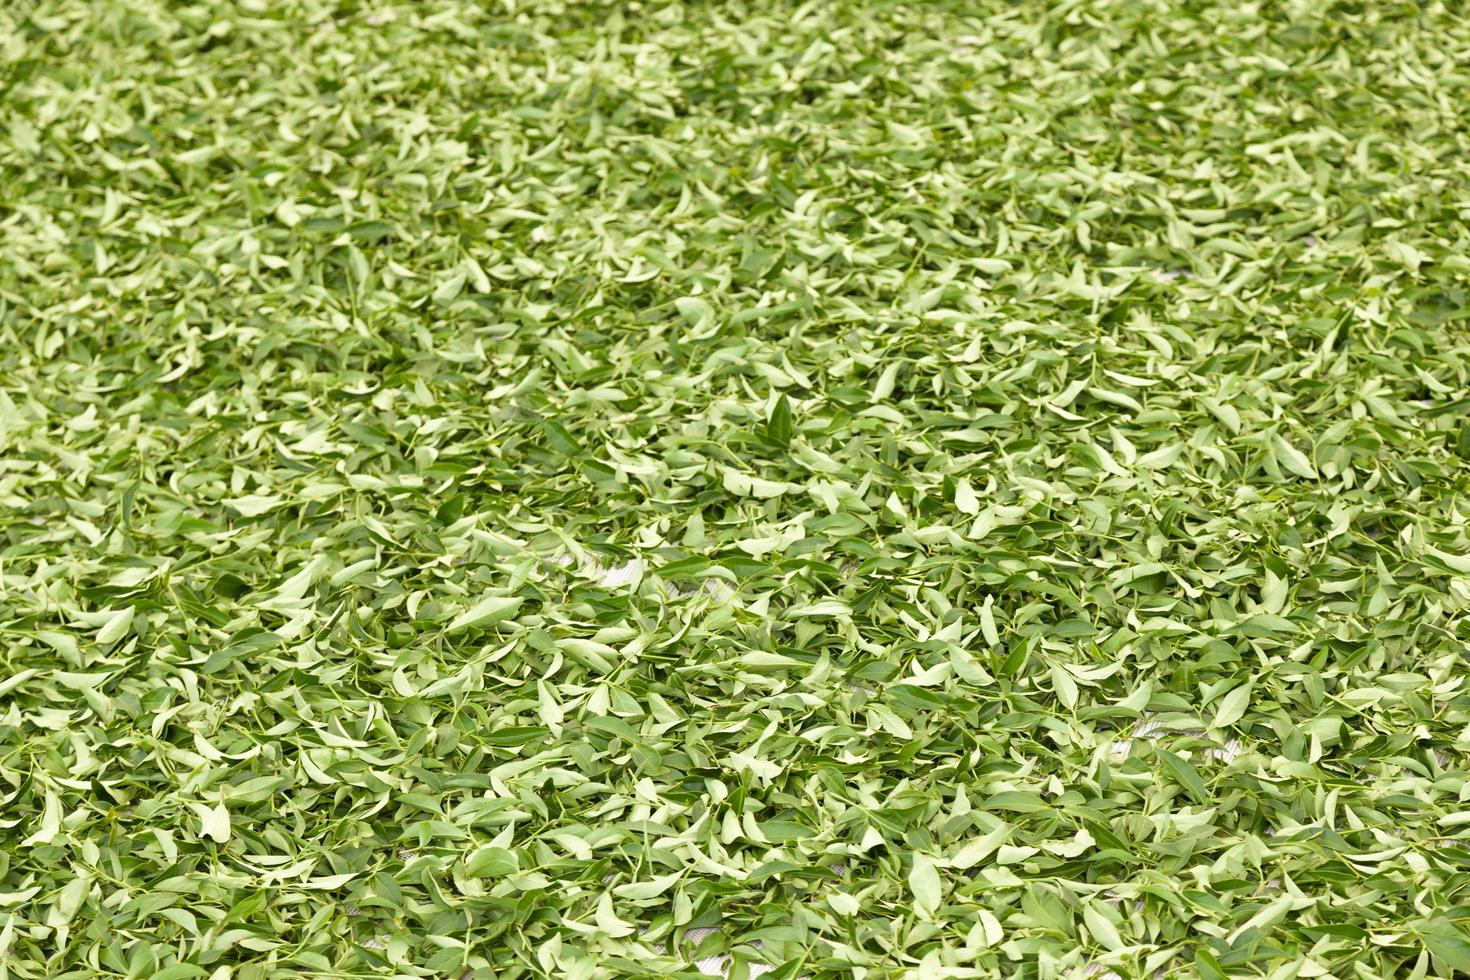 Dry tea leaves photo